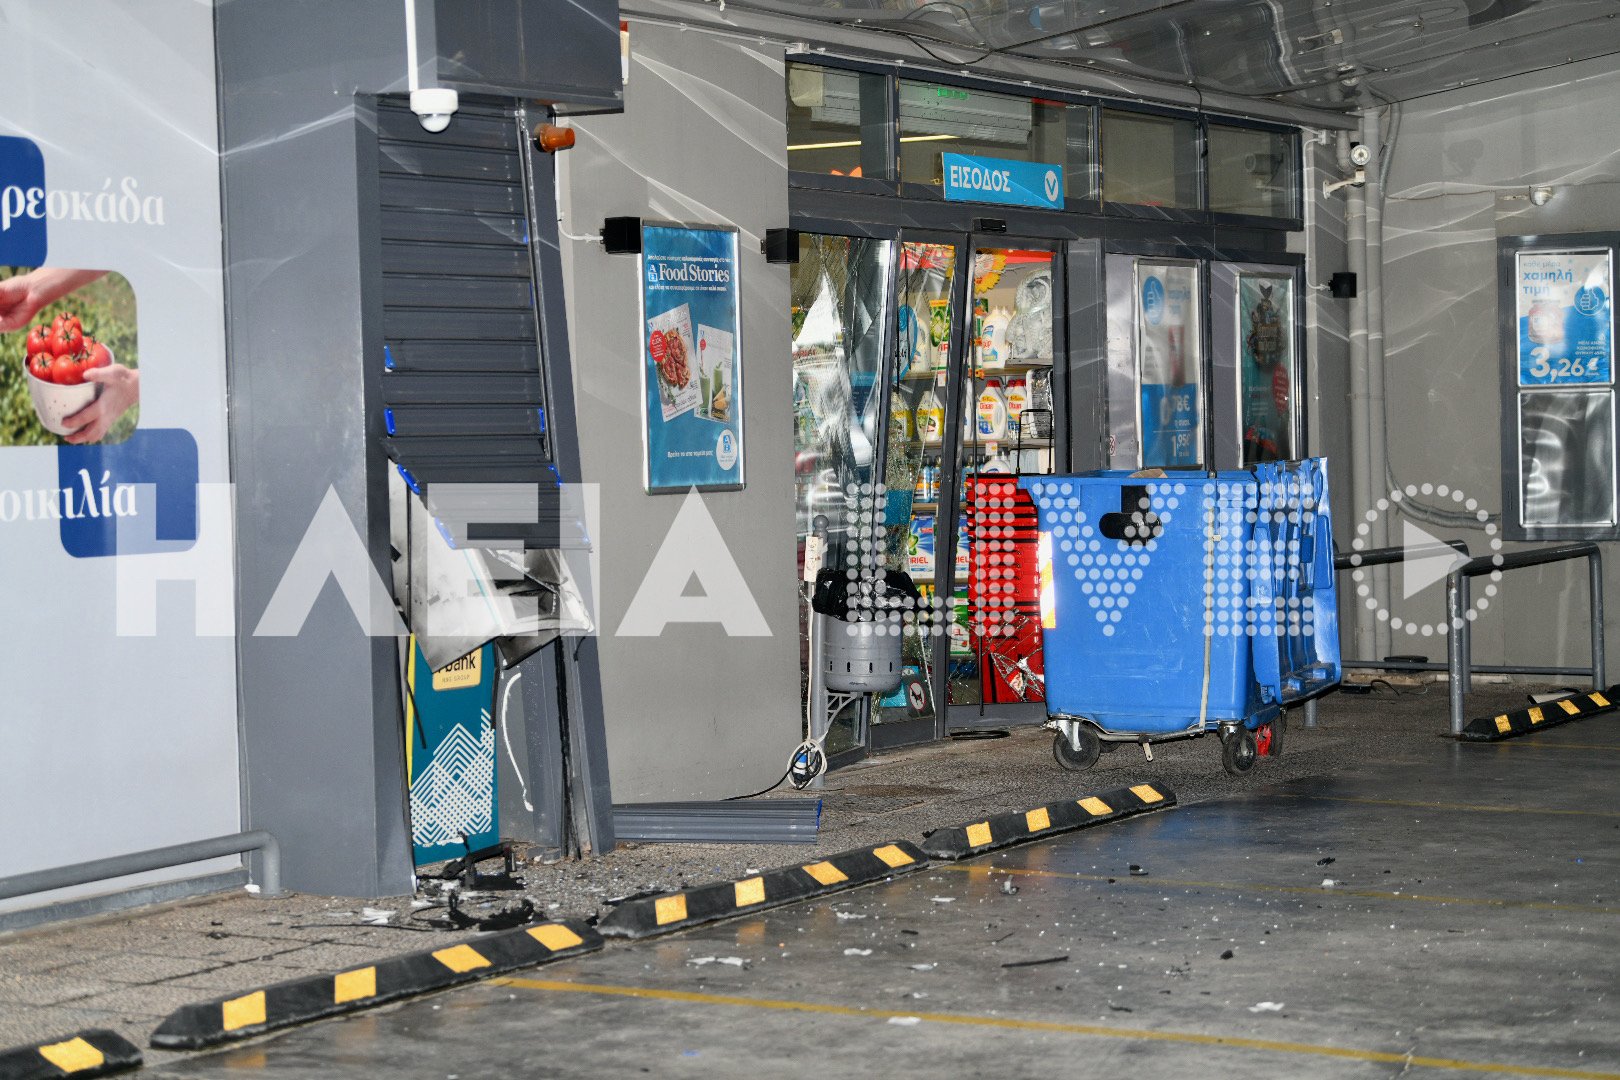 Ληστεία στην Ανδραβίδα: Ανατίναξαν ATM στην είσοδο σούπερ μάρκετ